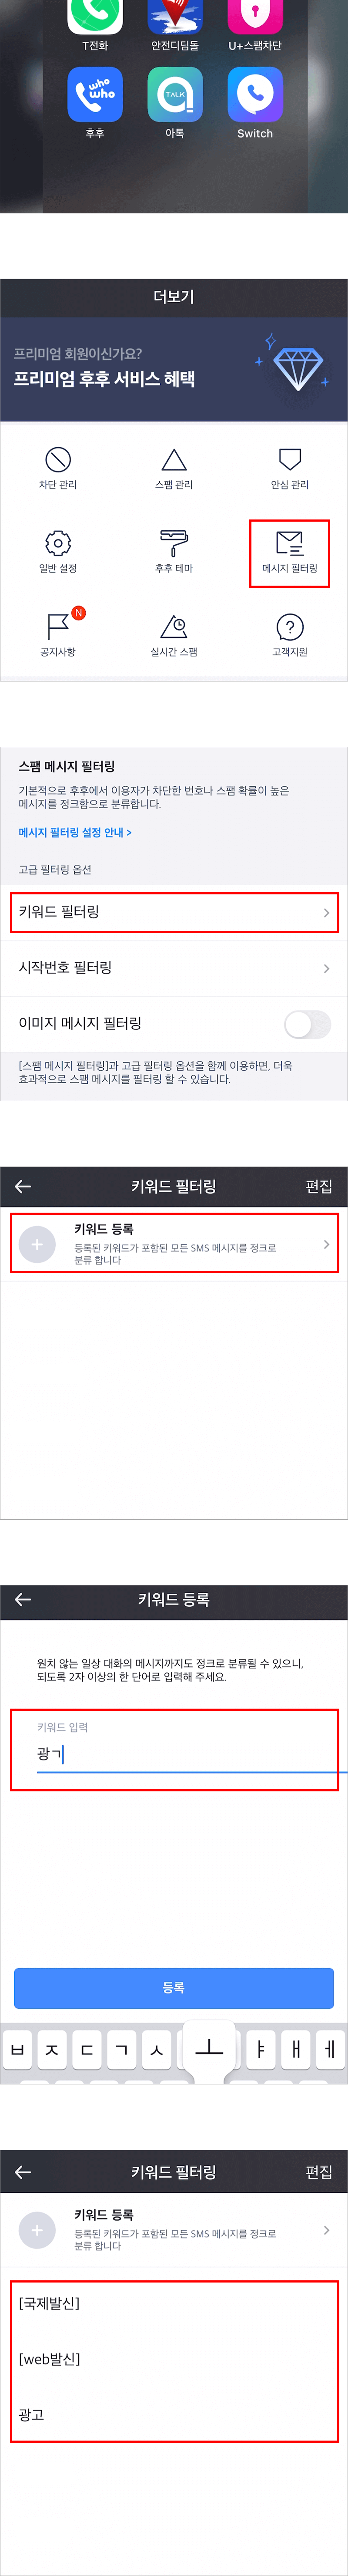 아이폰-후후앱-키워드설정